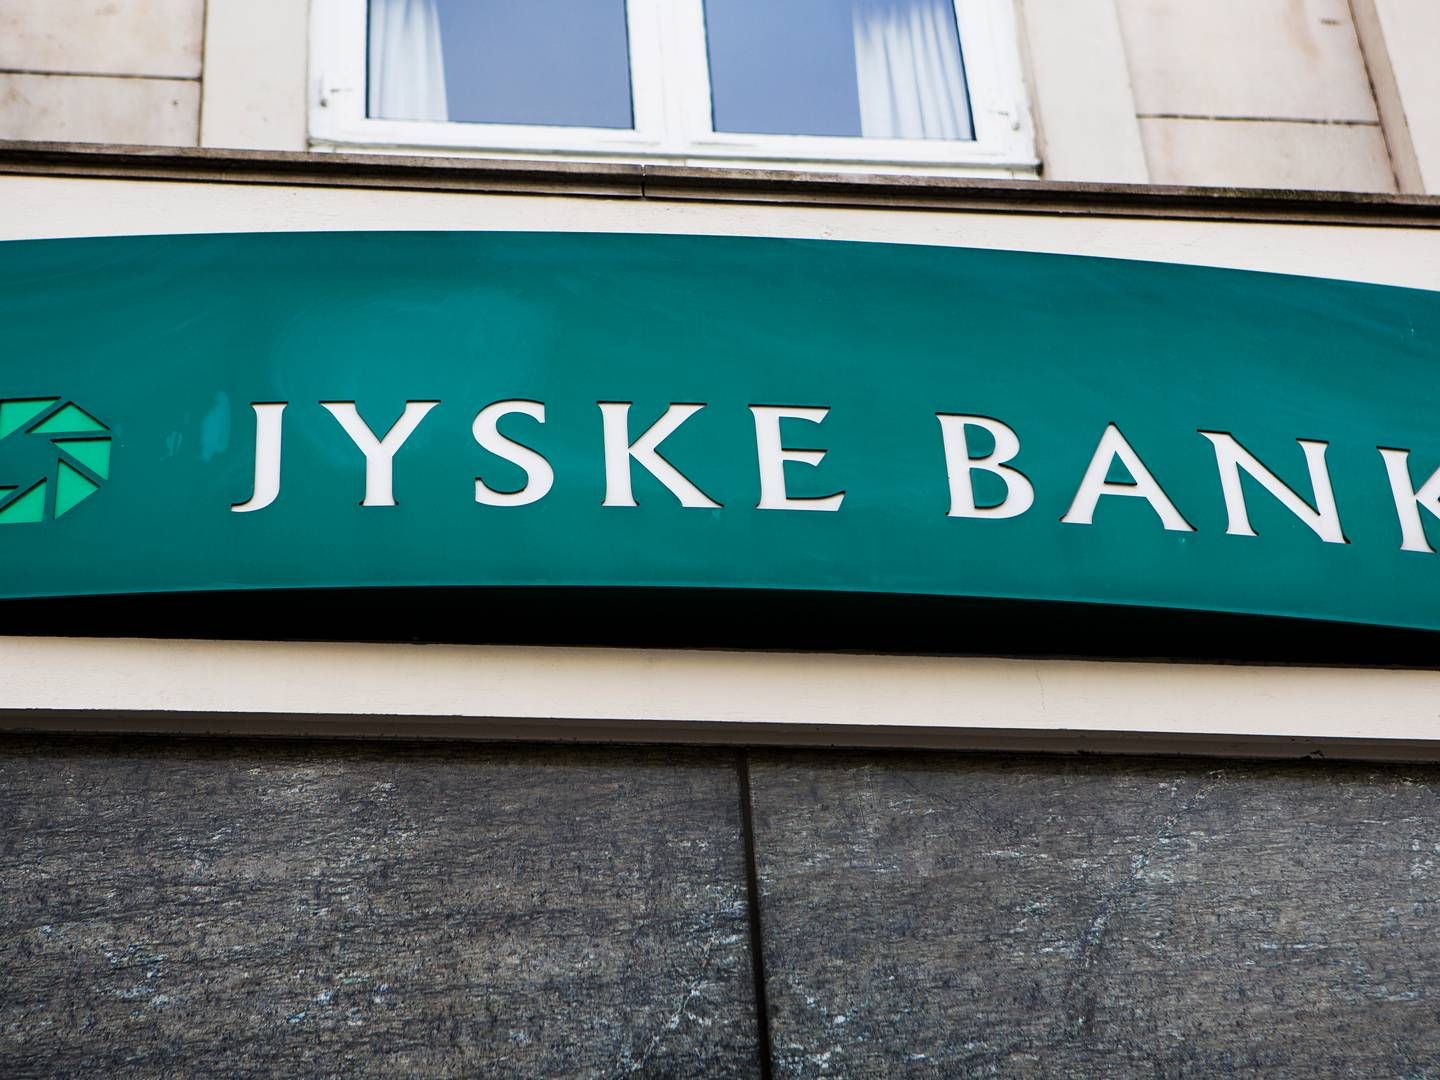 Jyske Bank står foran en retssag i Sø- og Handelsretten mod Forbrugerombudsmanden omkring indførelse af negative renter. | Foto: Simon Fals